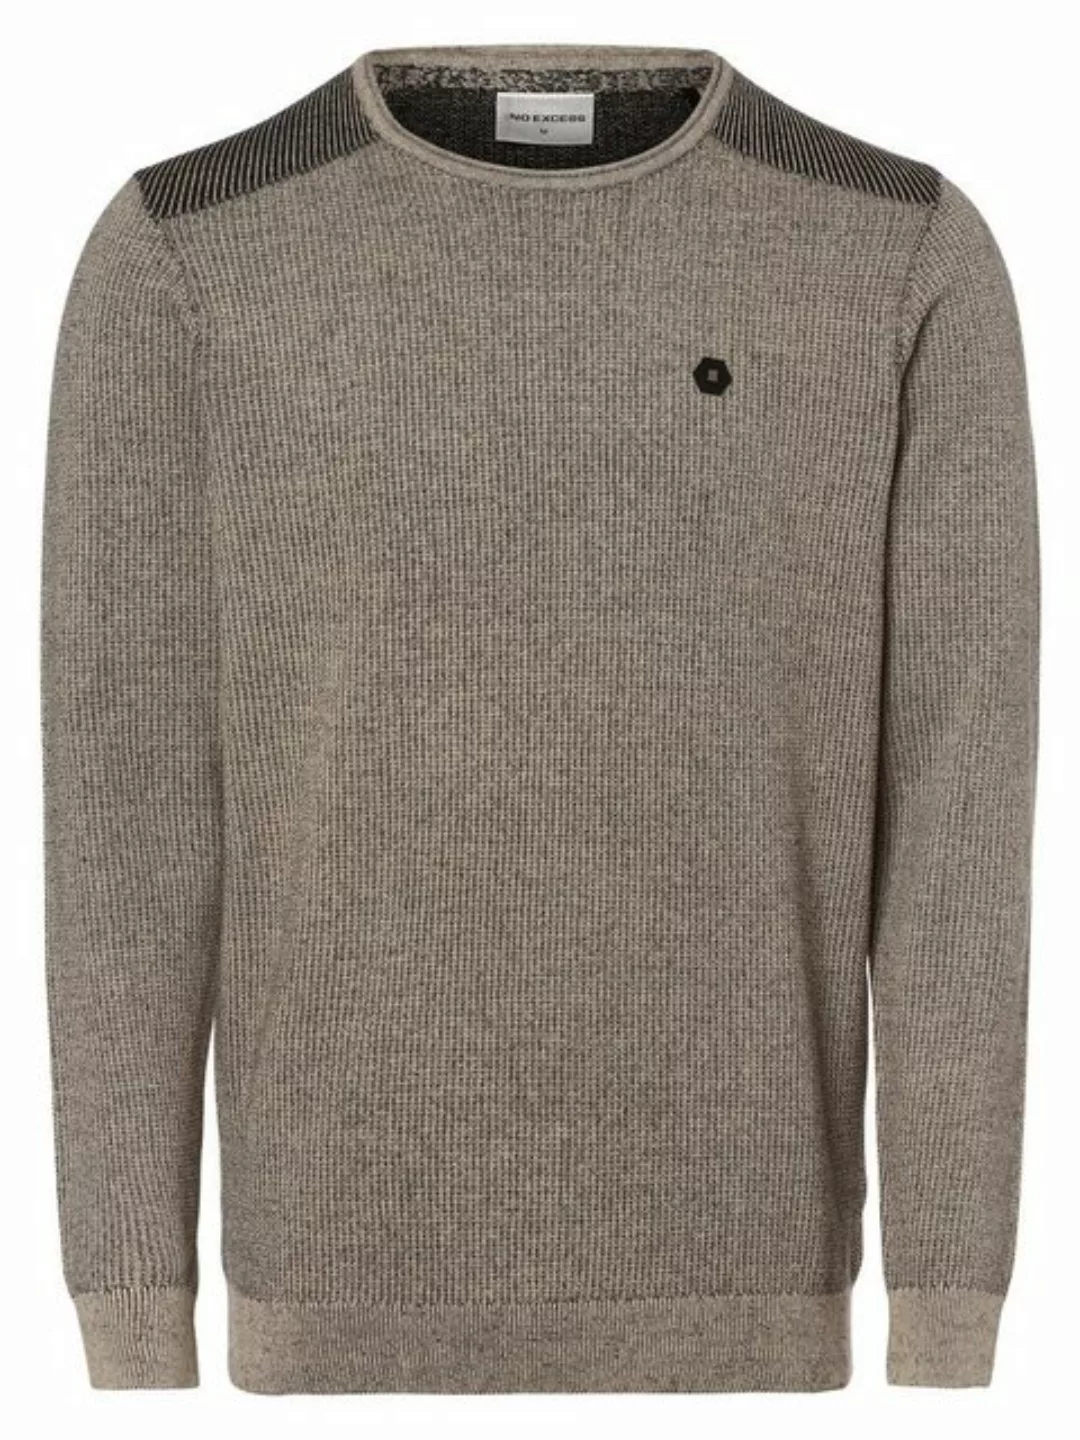 NO EXCESS Sweatshirt Pullover Crewneck 2 Coloured Jacqua günstig online kaufen